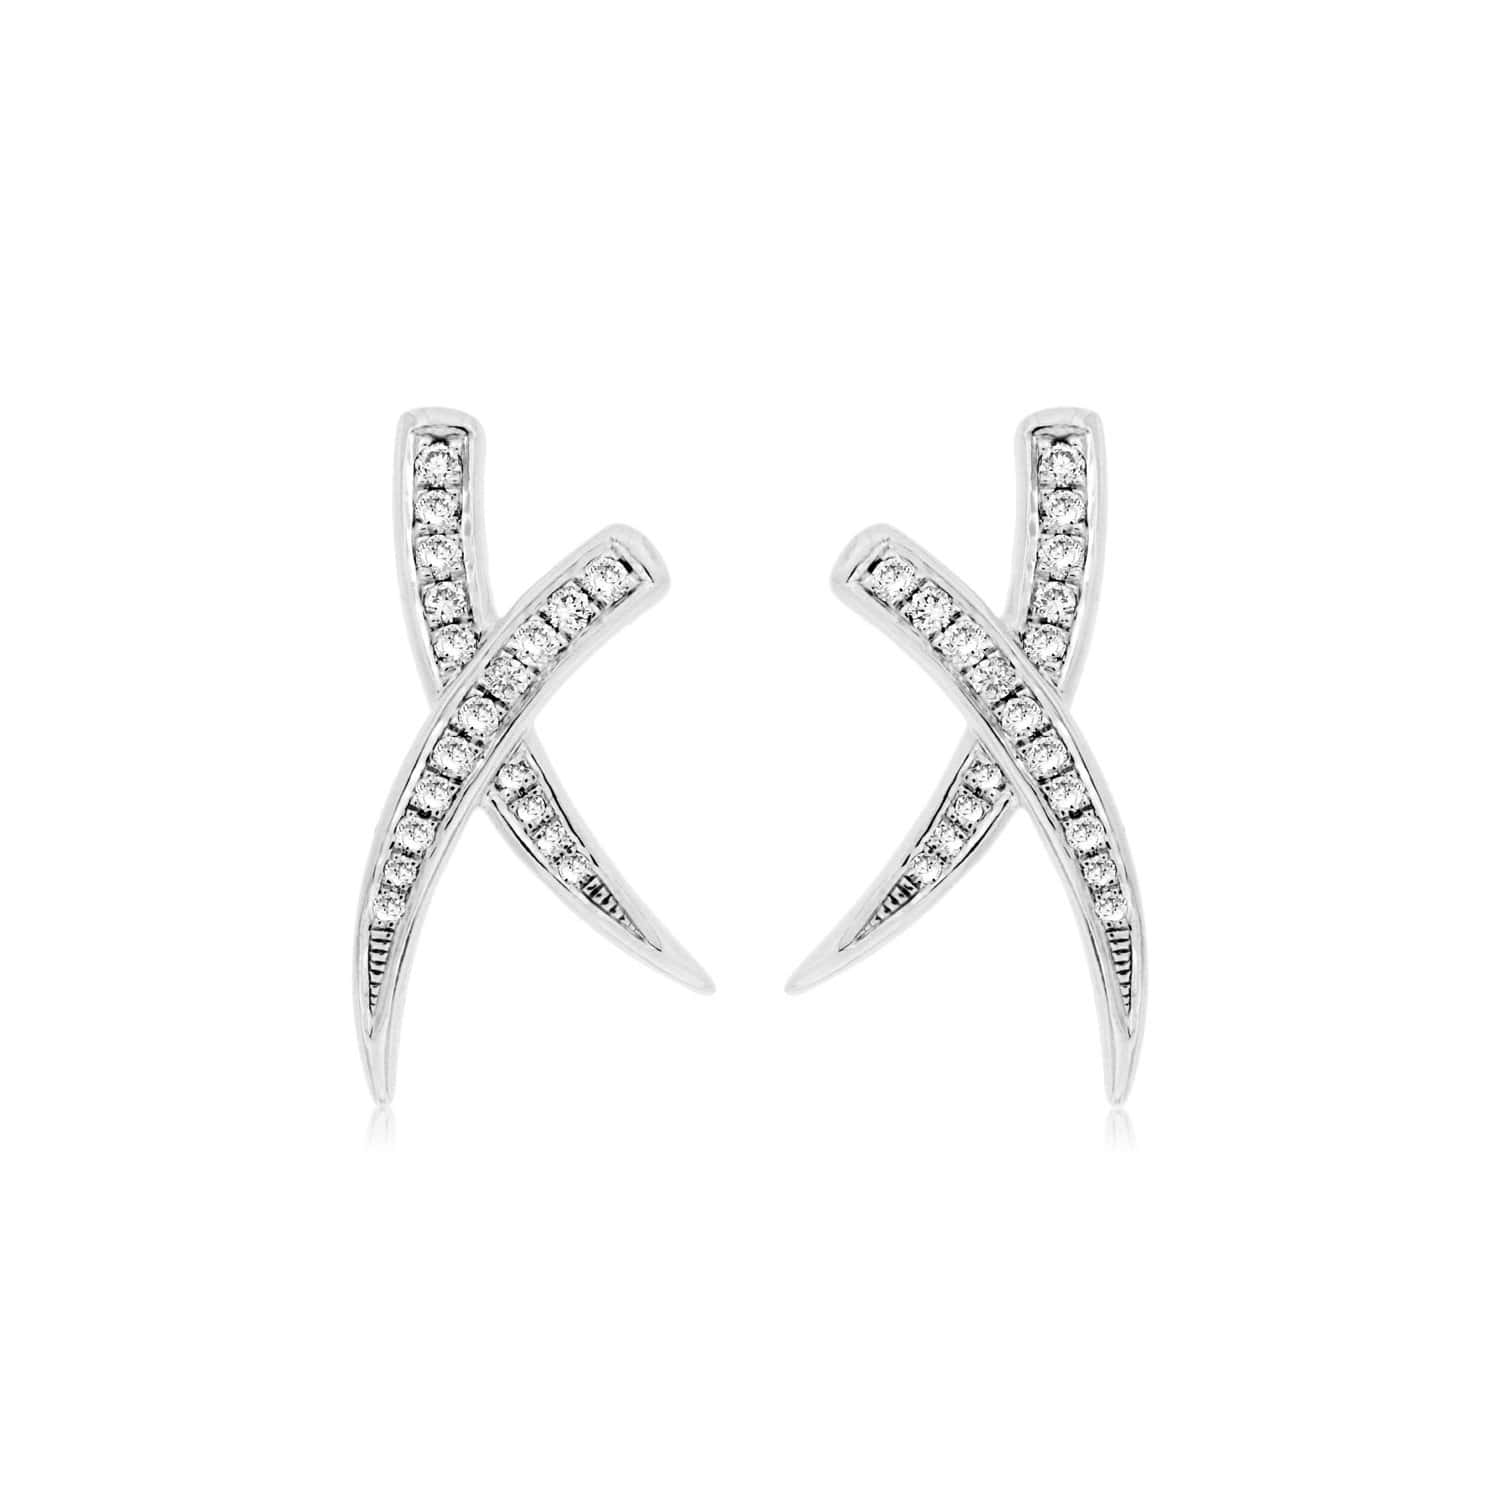 White Gold Cross Over Diamond Earrings